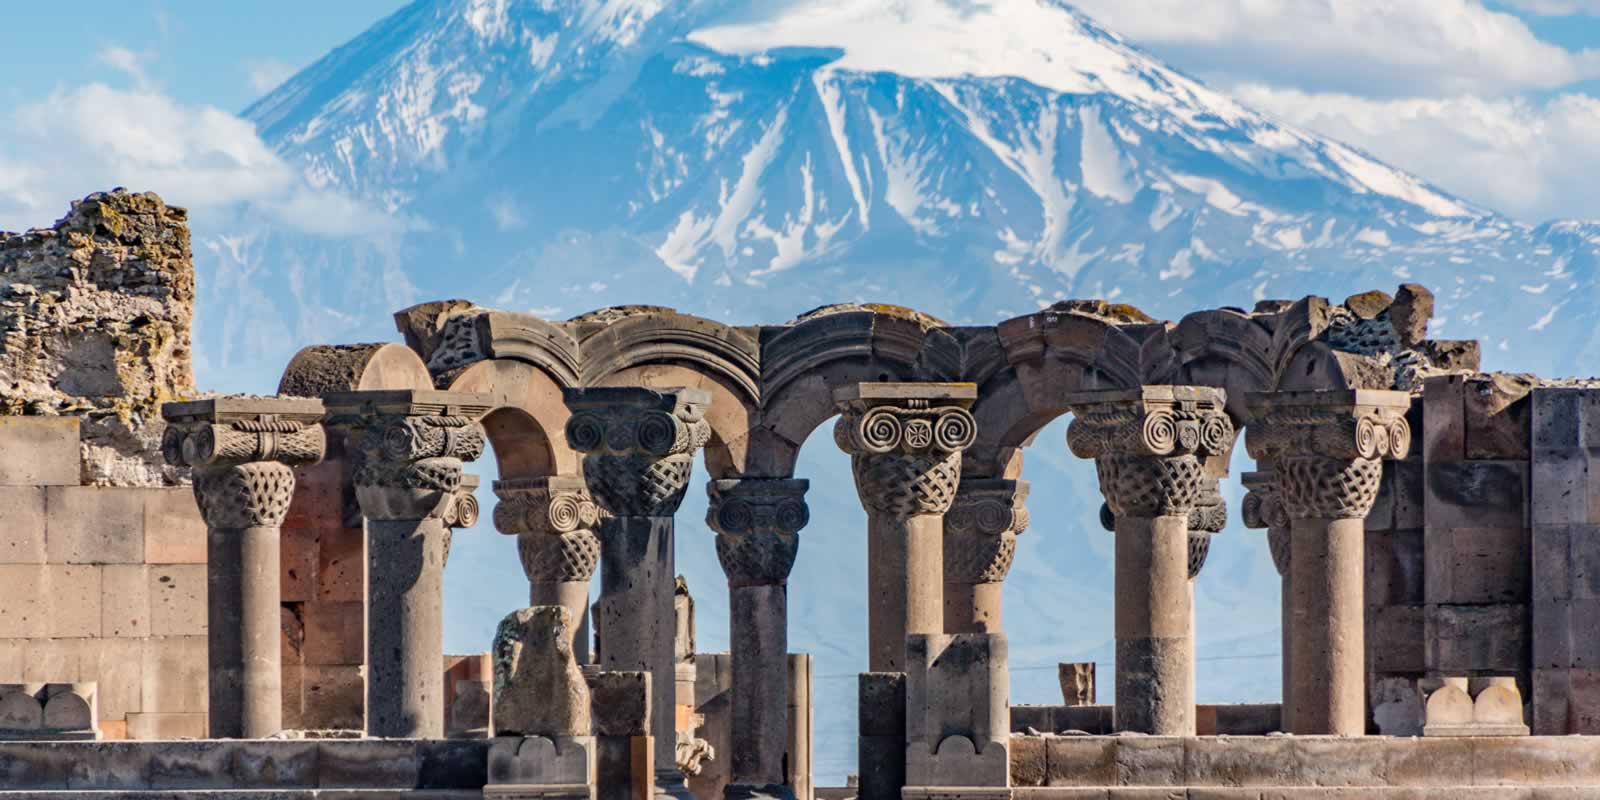 Armenia Tours